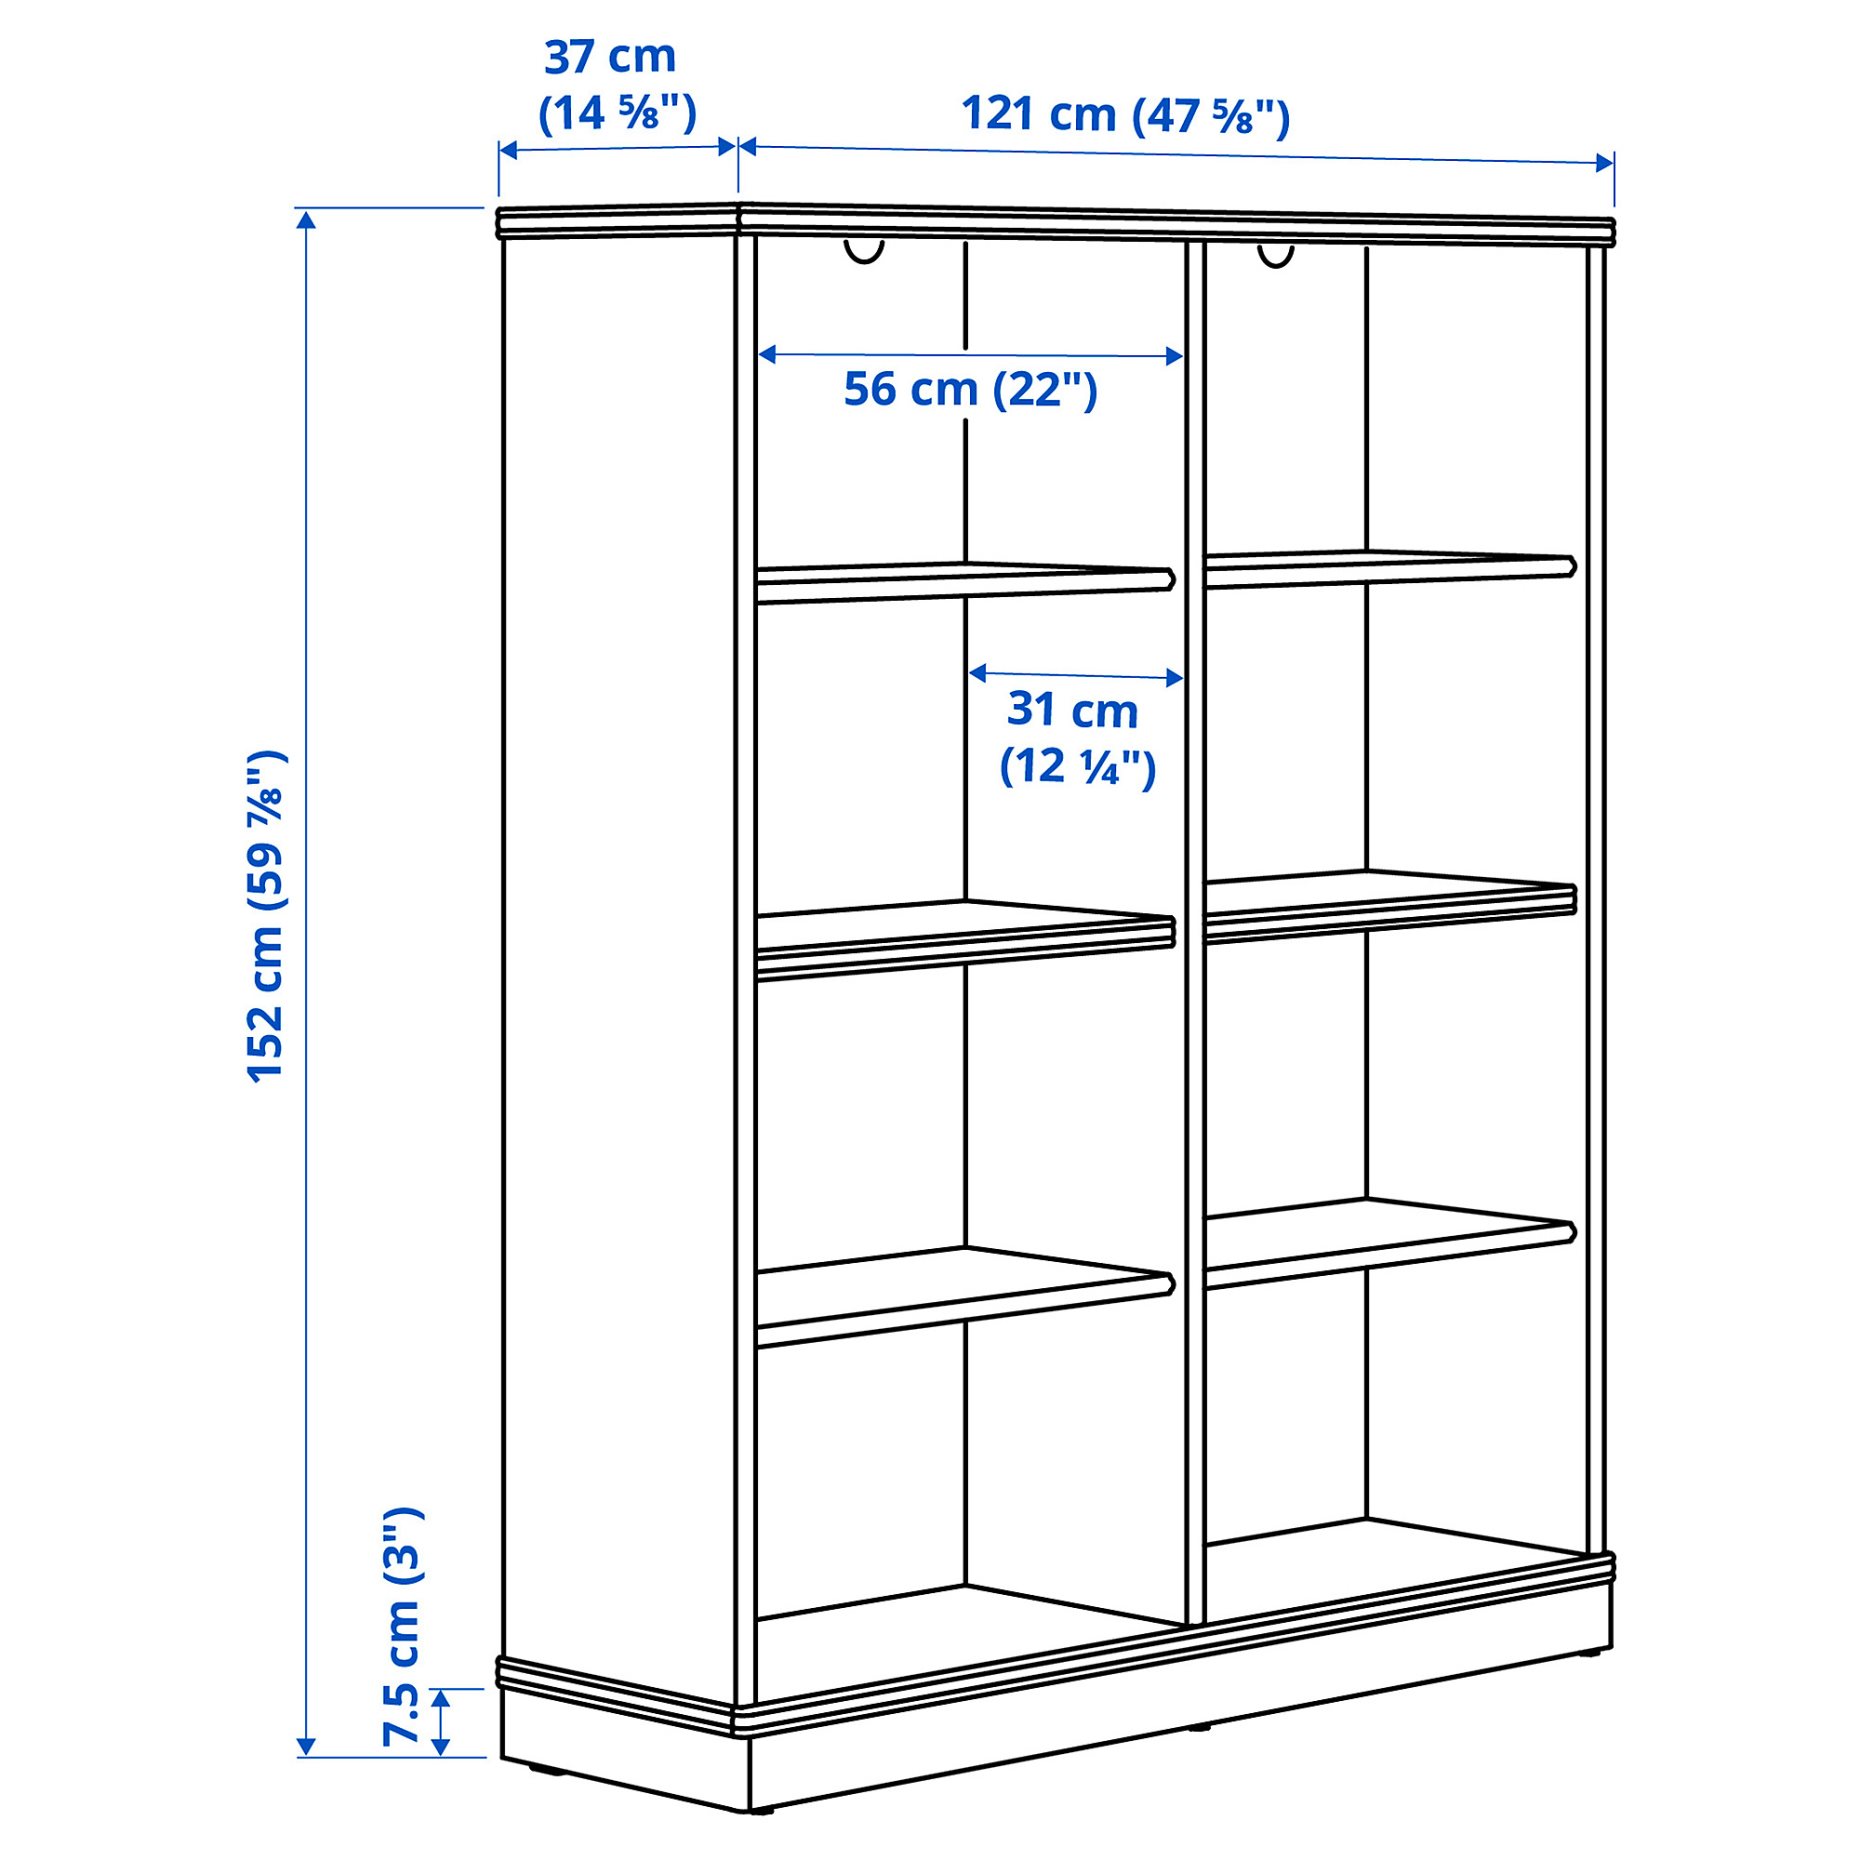 LANESUND, bookcase, 121x37x152 cm, 204.348.27